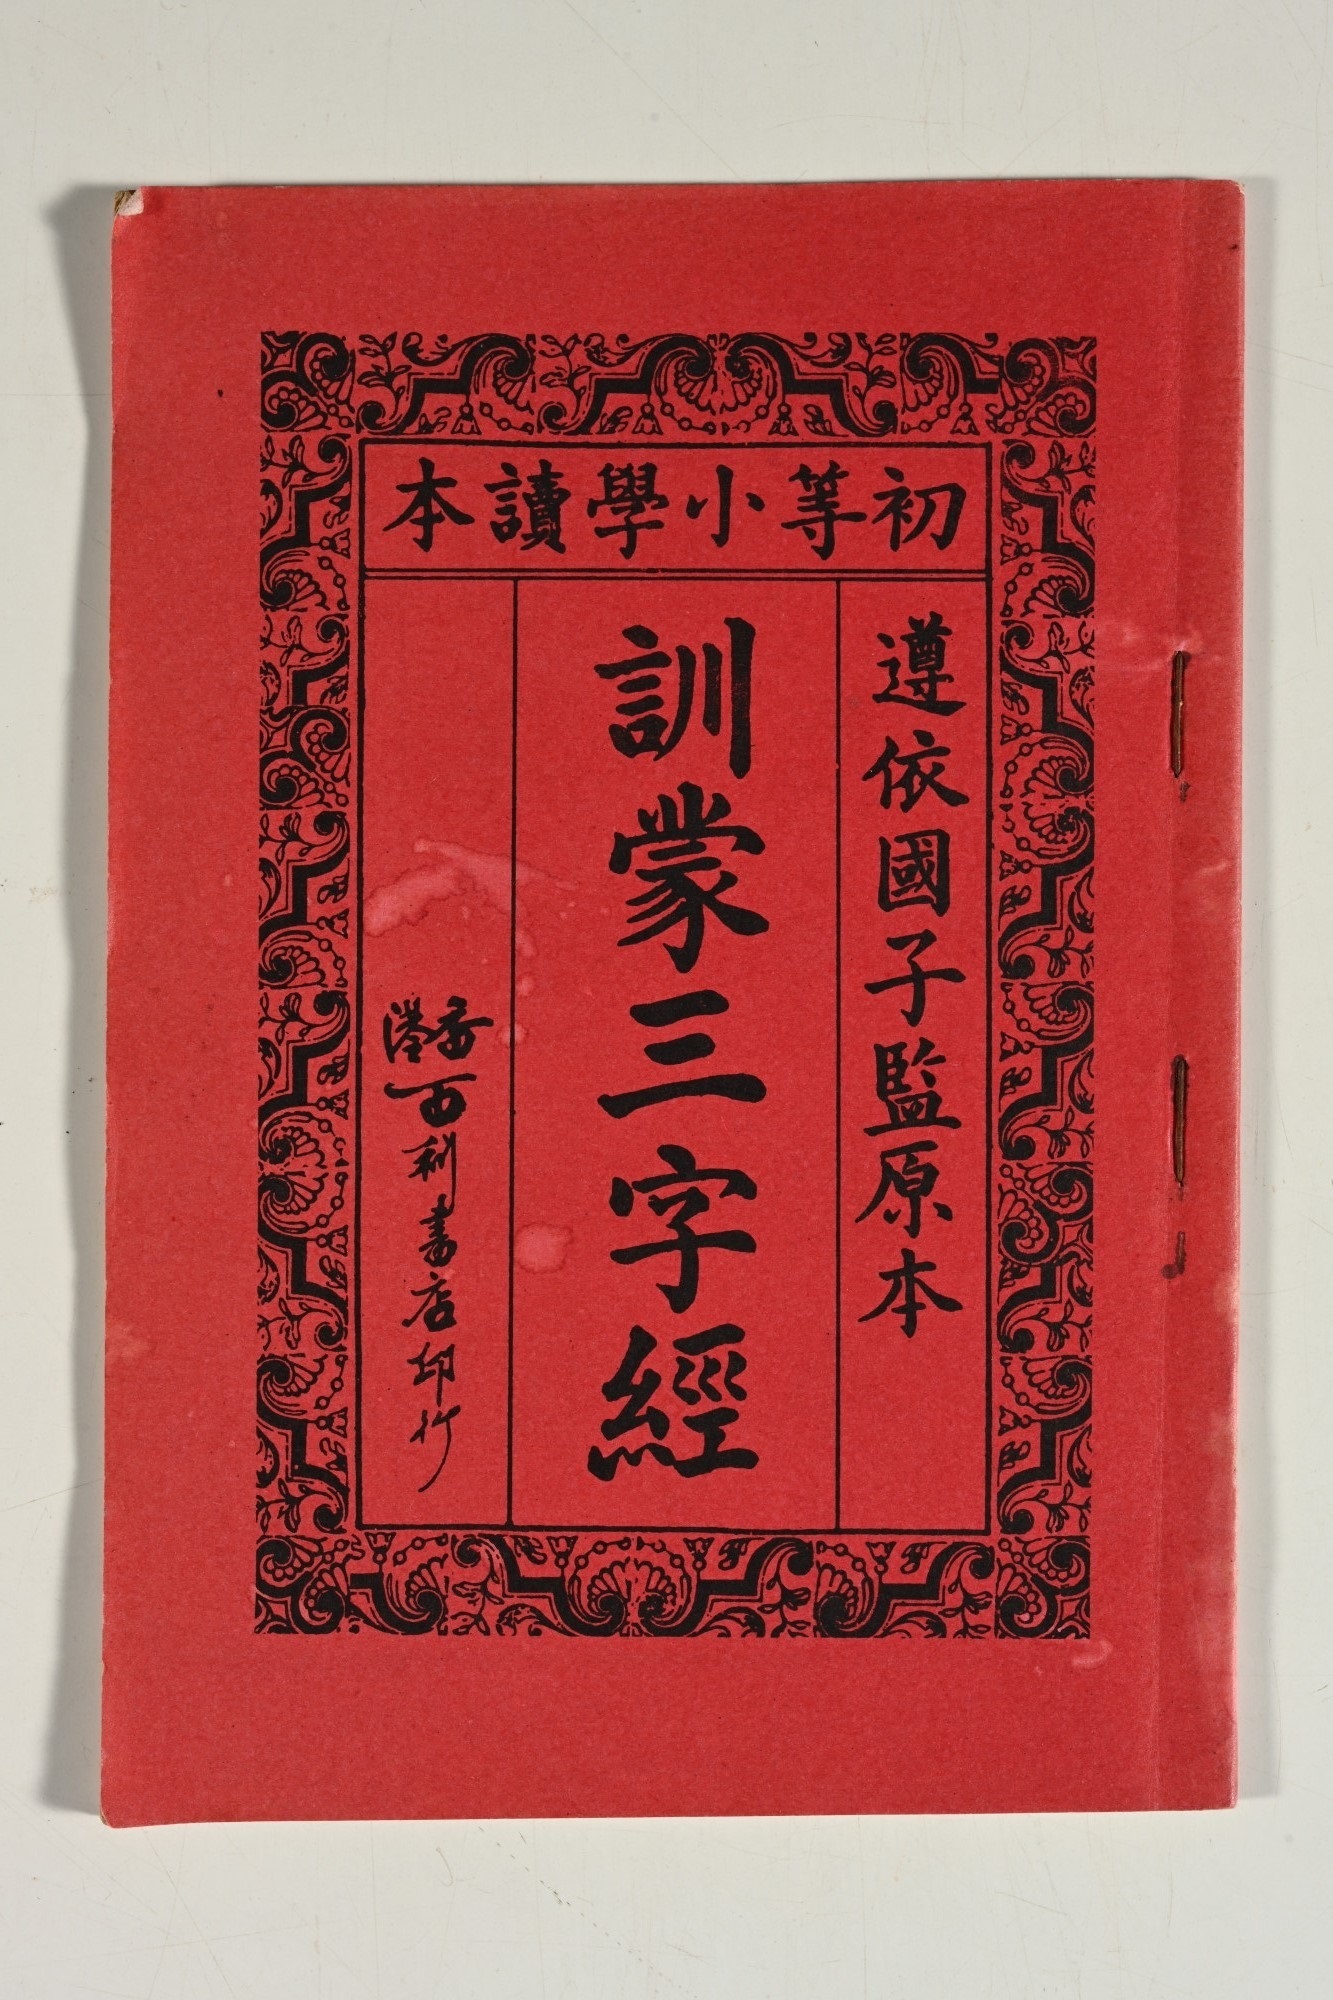 1930年代香港百利书店印行的《训蒙三字经》<br>钟燕齐先生藏品